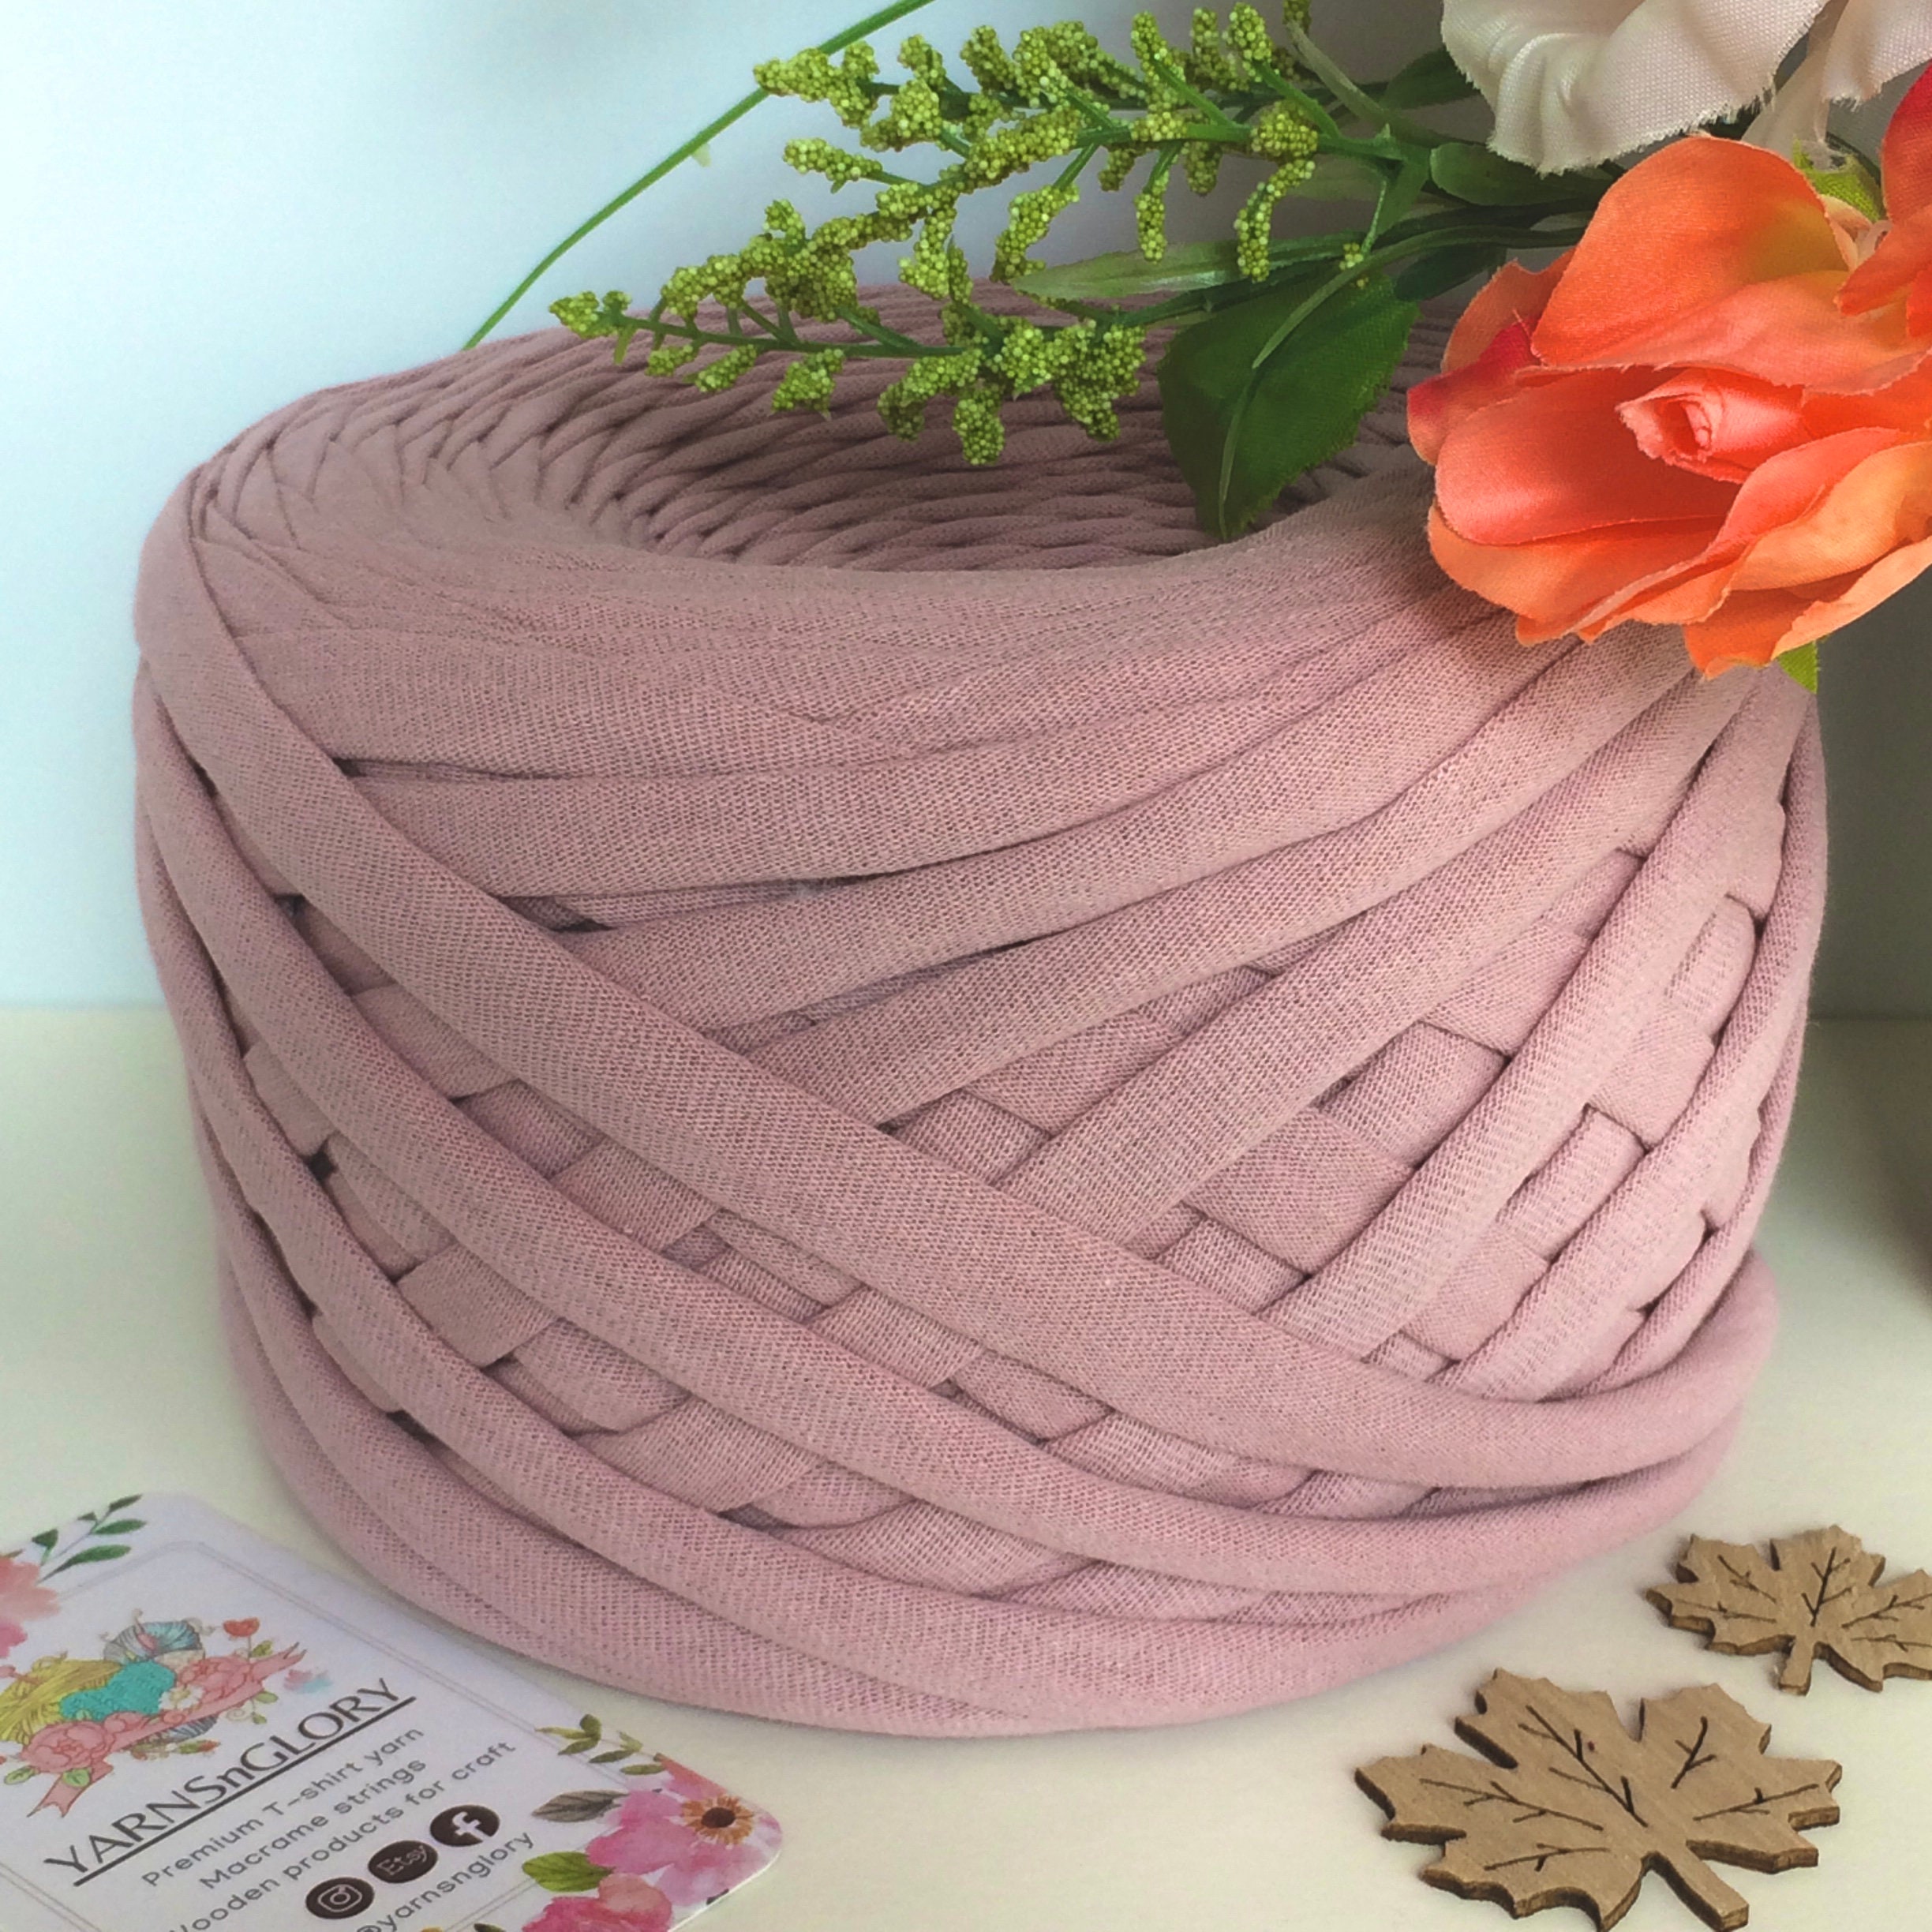 Pelote de fil pour macramé Anchor Crafty coton polyester rose - Beaux-arts